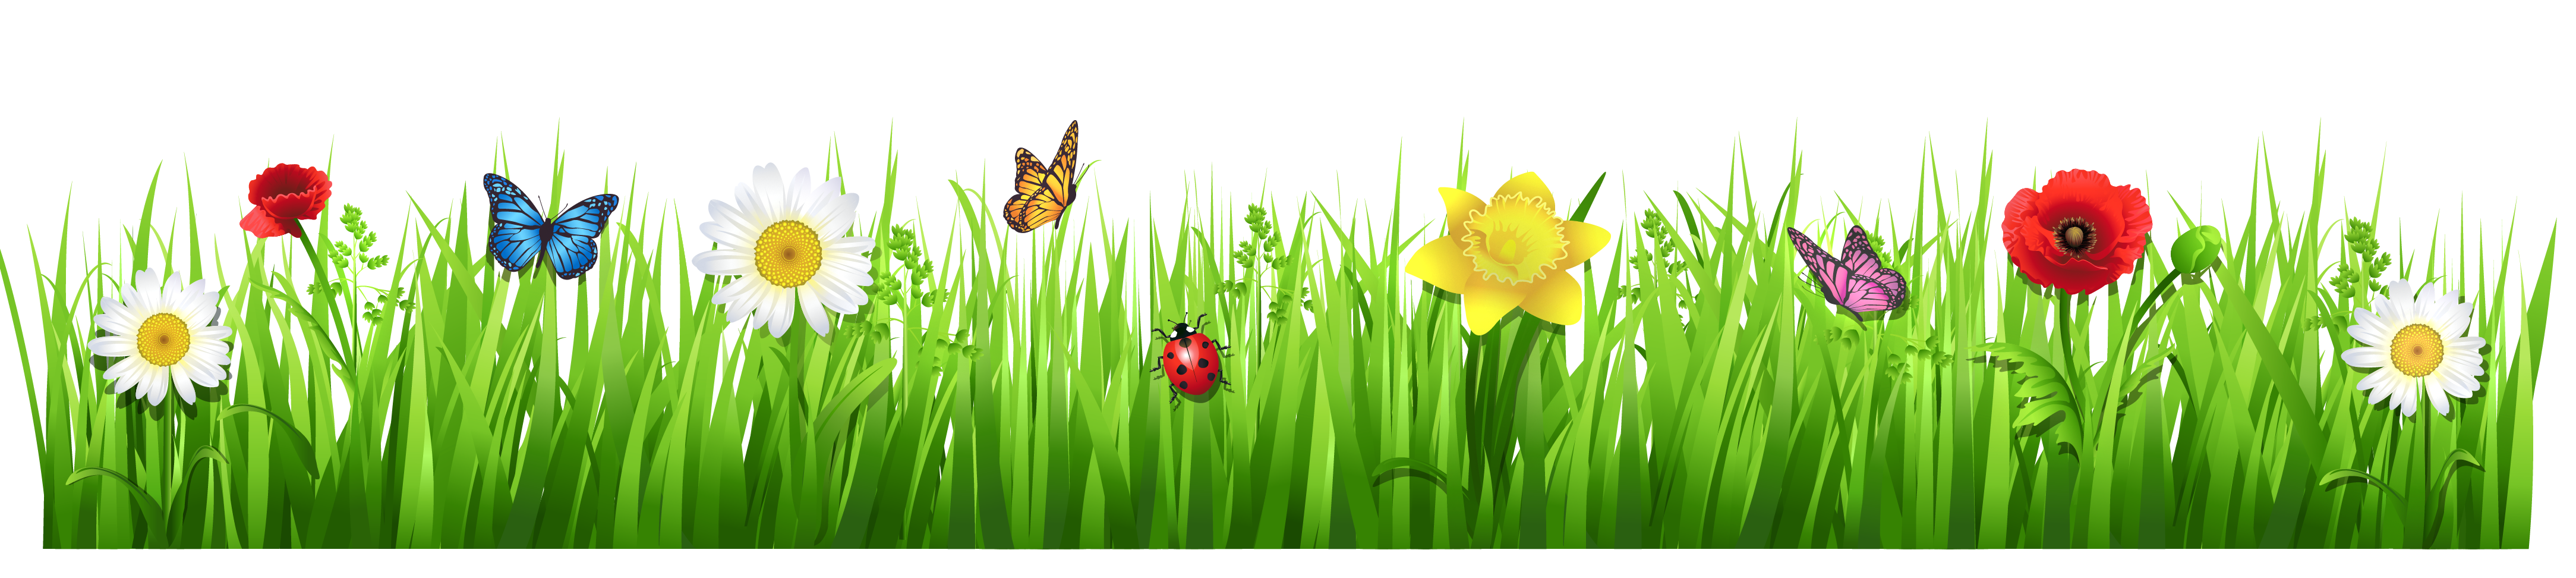 Clipart spring spring season. Grass clip art png